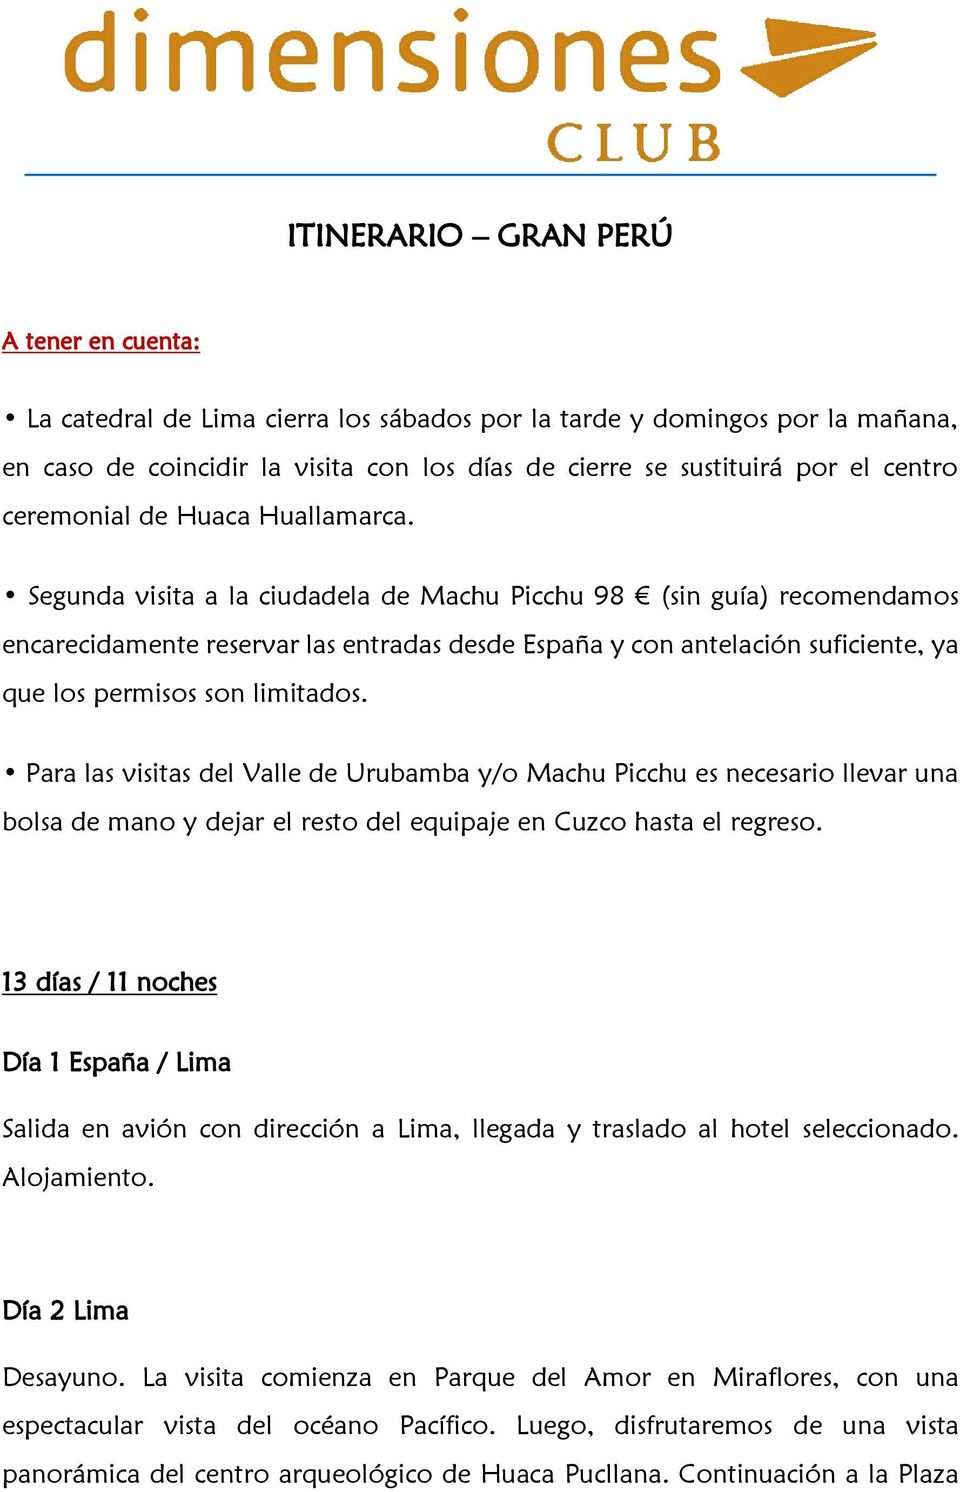 Segunda visita a la ciudadela de Machu Picchu 98 (sin guía) recomendamos encarecidamente reservar las entradas desde España y con antelación suficiente, ya que los permisos son limitados.